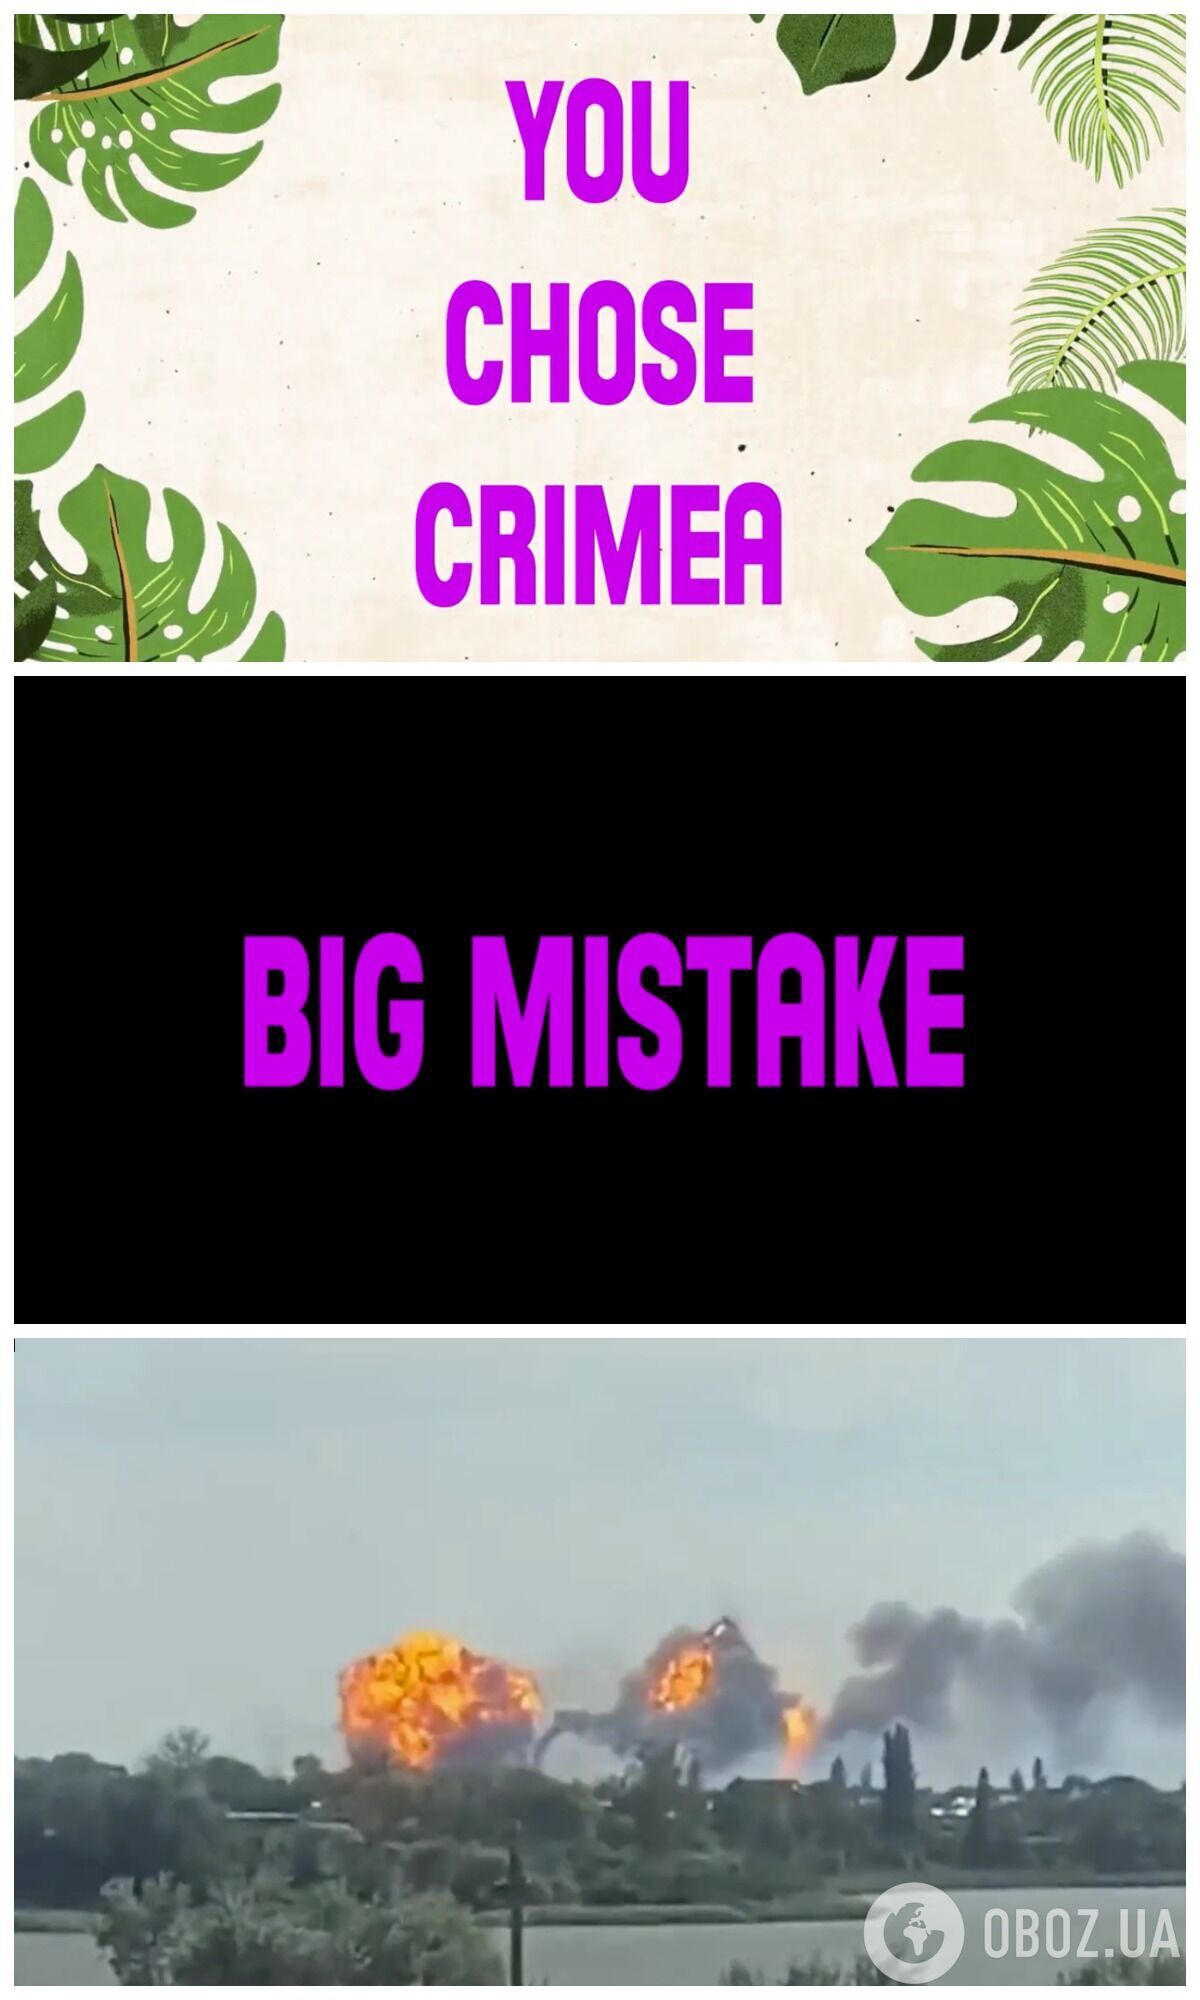 Министерство обороны Украины пошутило о взрывах в Крыму